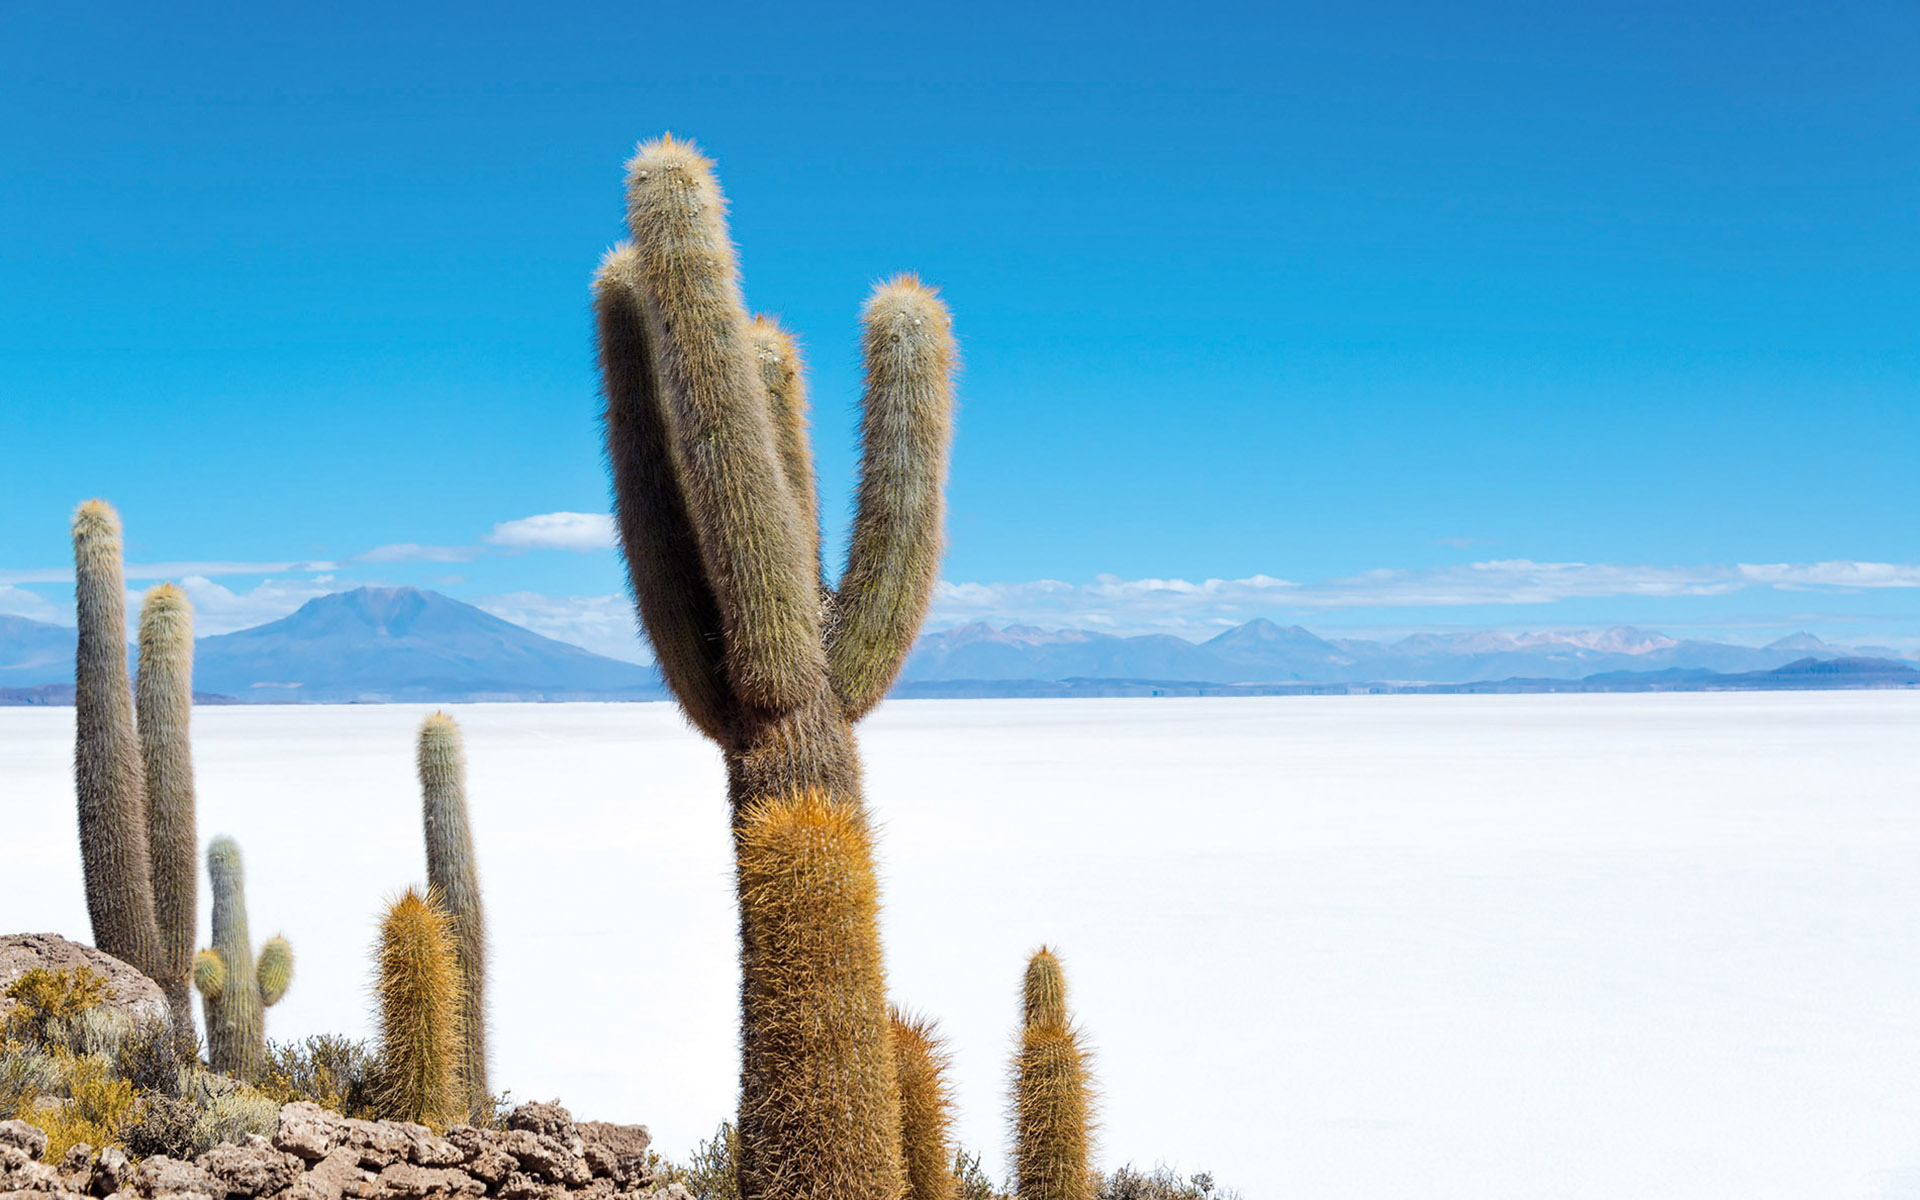 Скачать обои бесплатно Кактус, Боливия, Земля/природа, Соленое Озеро картинка на рабочий стол ПК